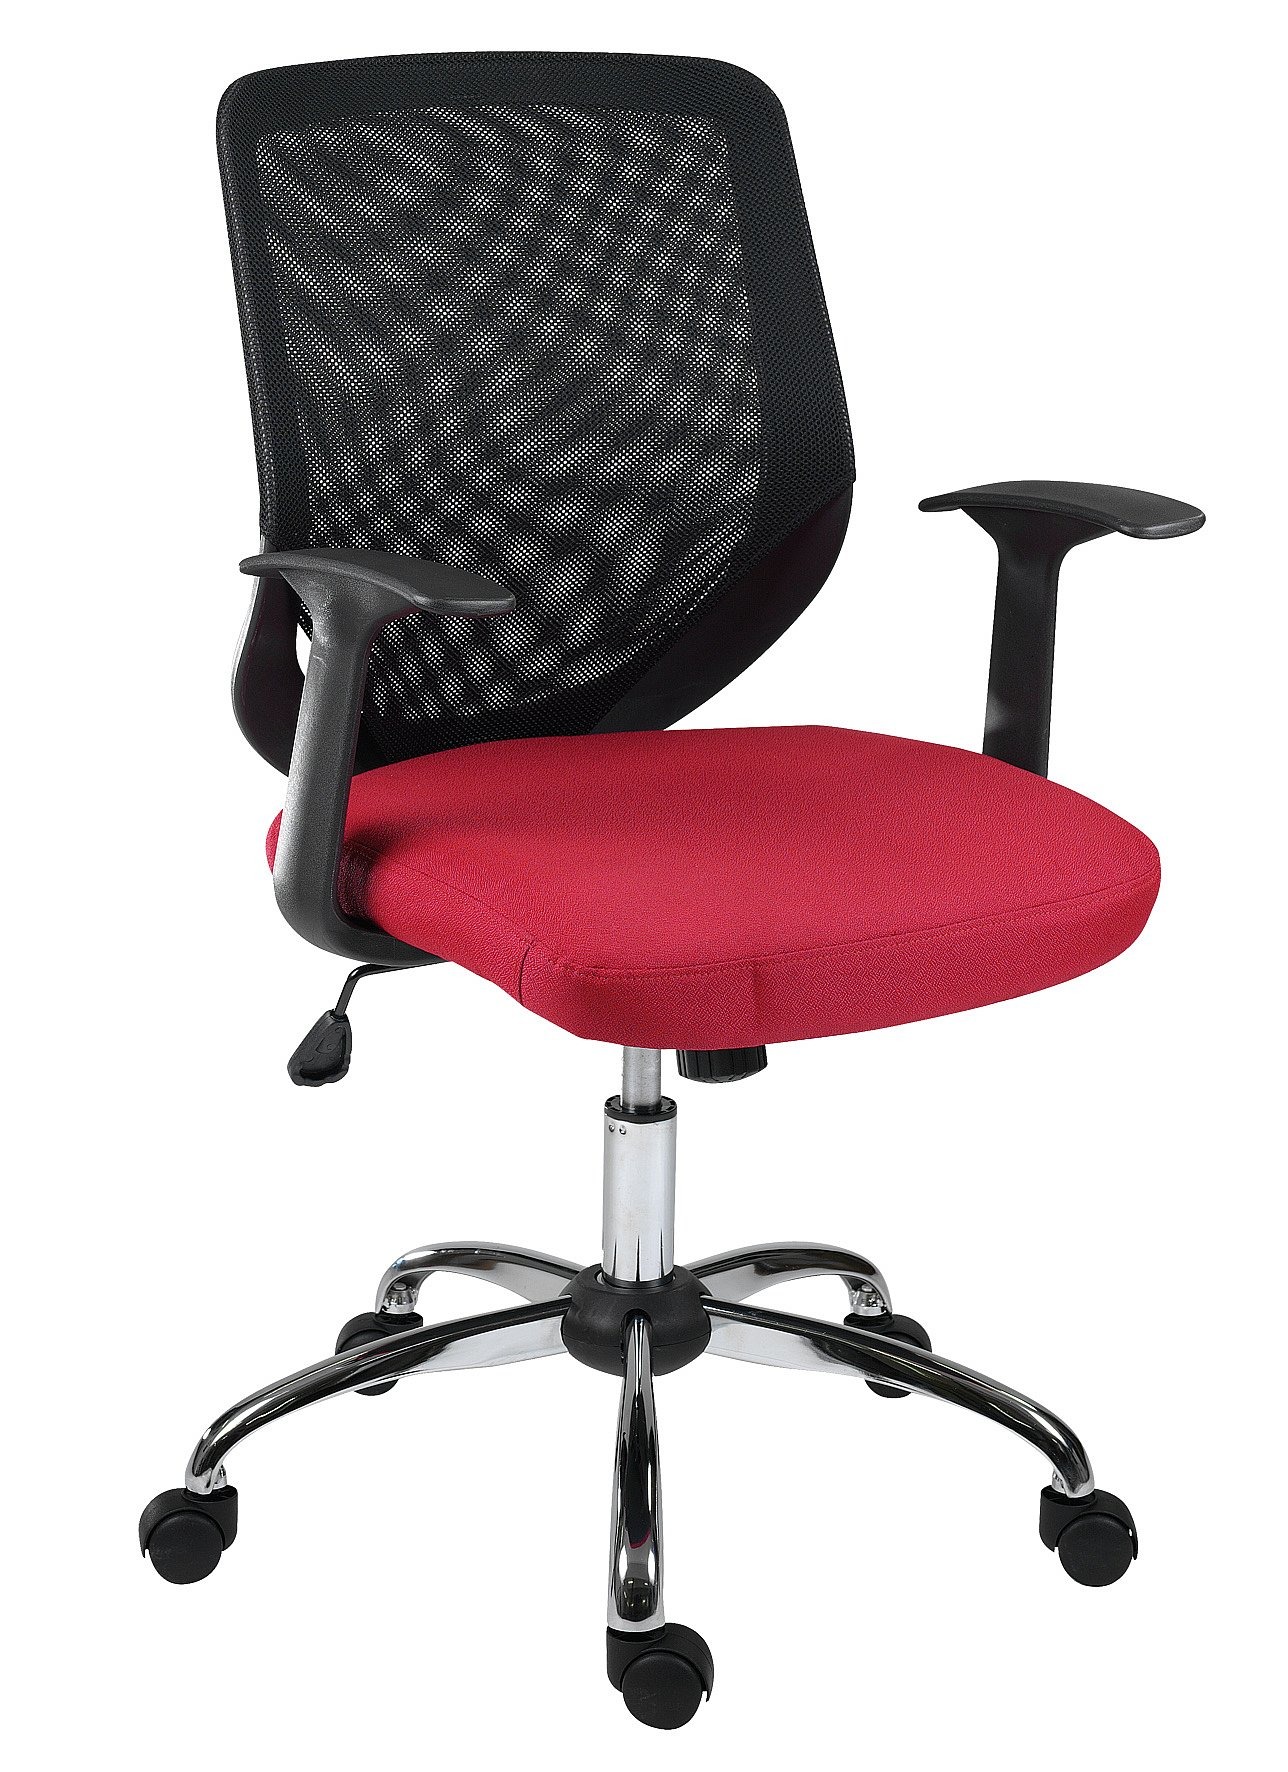 Офисное кресло до 150 кг. Кресло Антарес. Офисные стулья Antares. Современное офисное кресло. Кресло офисное яркое.